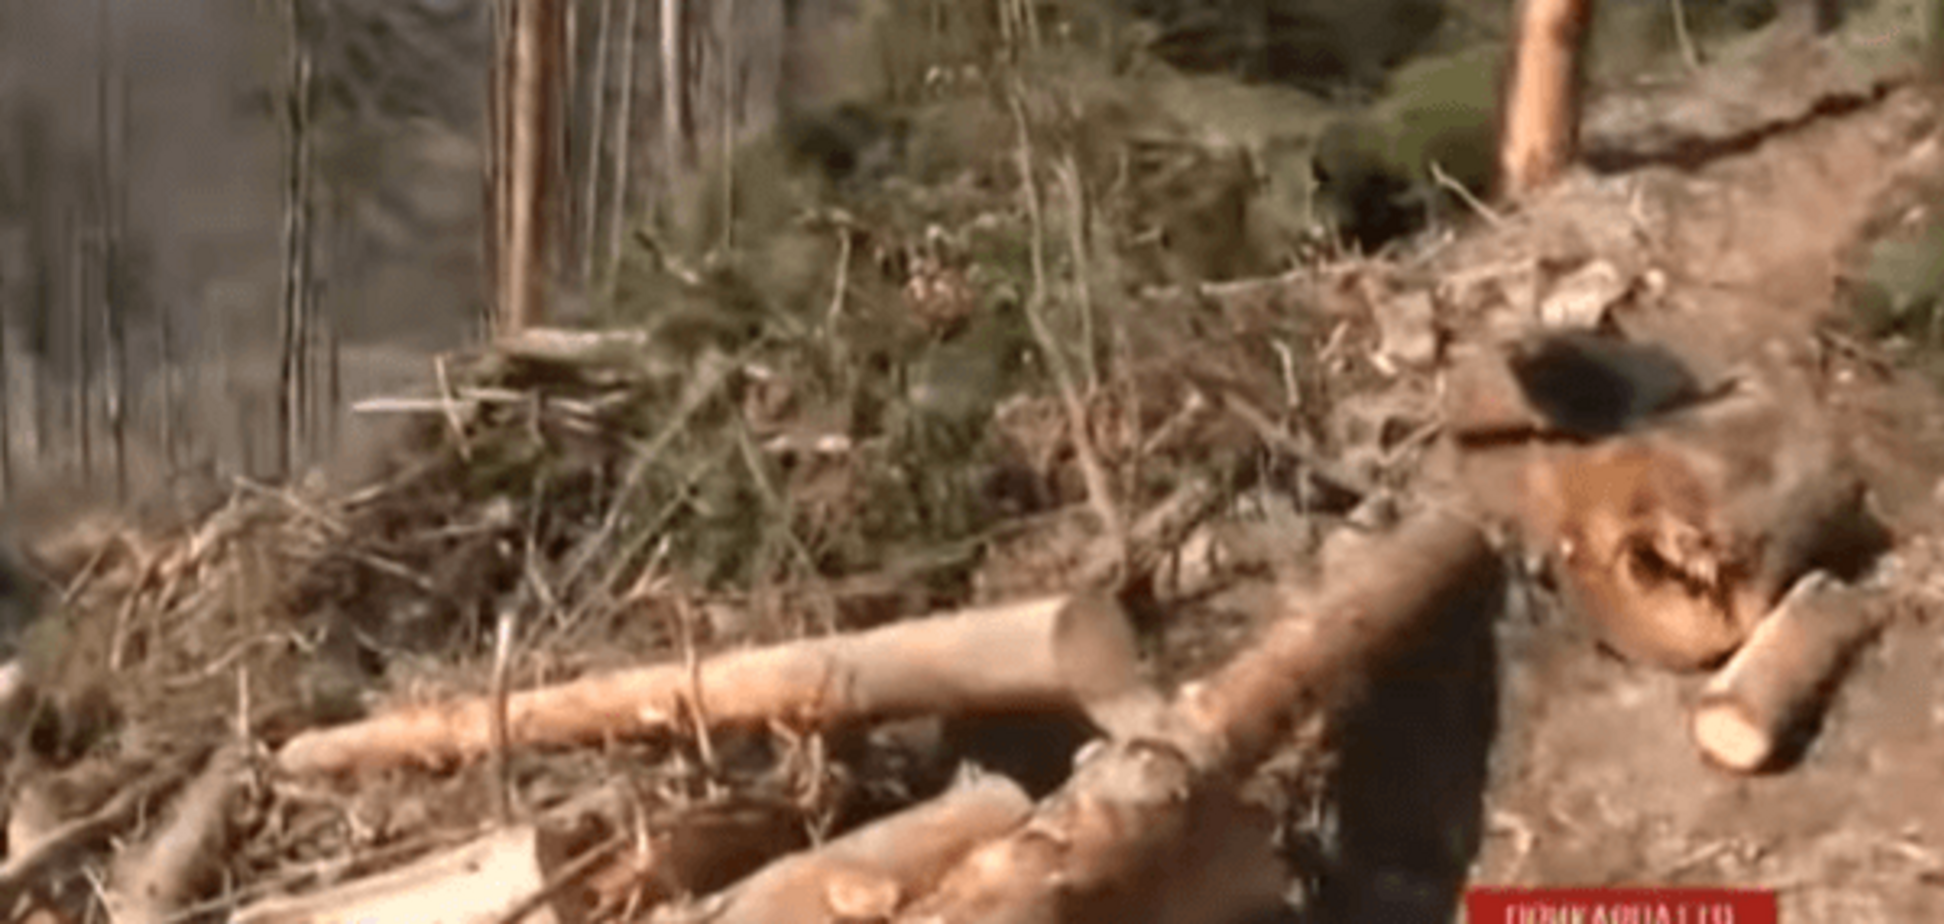 Як убивають Карпати: на відео зняли тотальне знищення лісів у горах